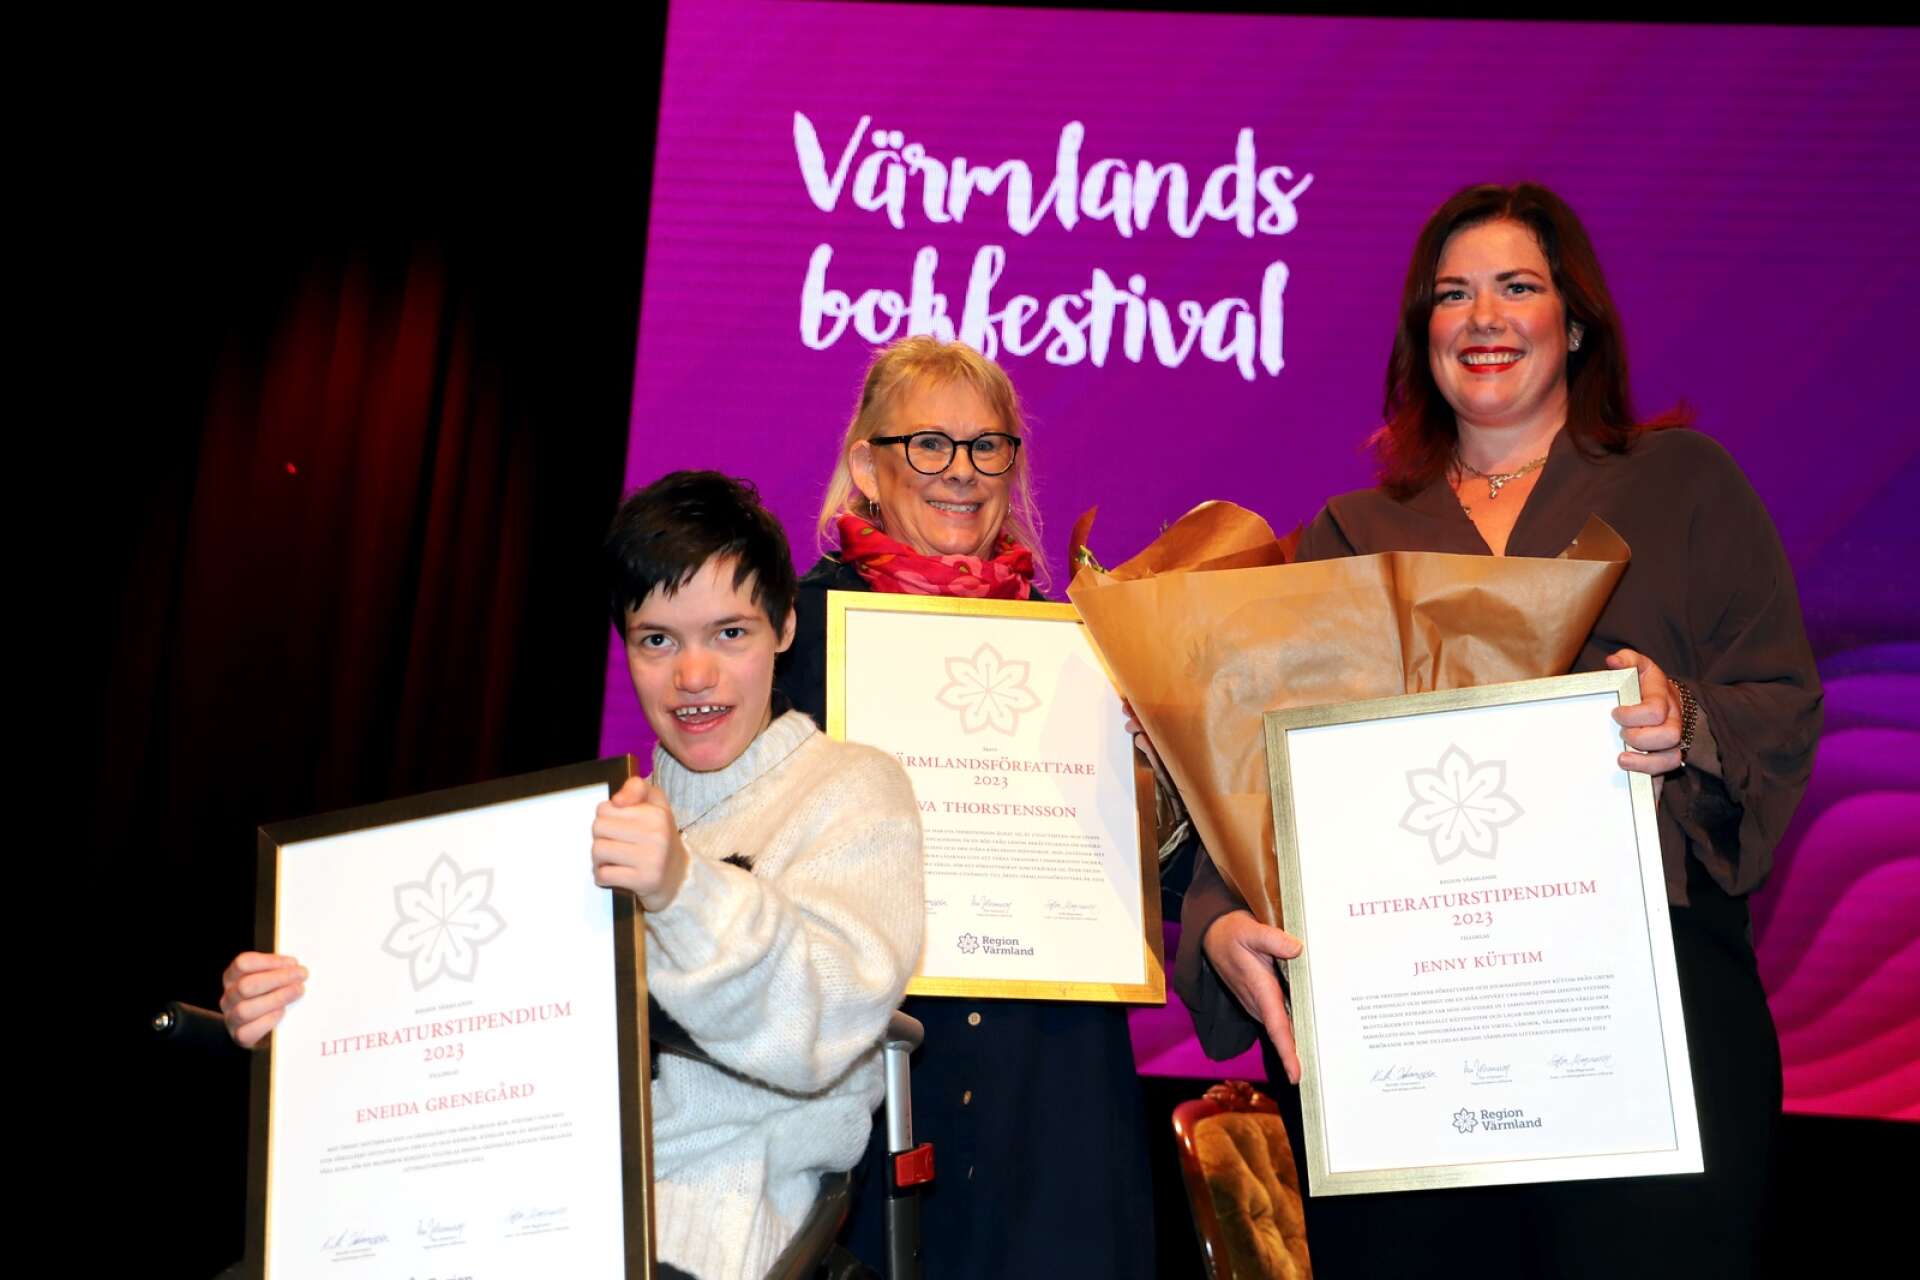 Årets Värmlandsförfattare Eva Thorstensson och Årets litteraturstipendiater Eneida Grenegård och Jenny Küttim fick ta emot sina utmärkelser på Värmlands bokfestivals stora scen på fredagseftermiddagen.